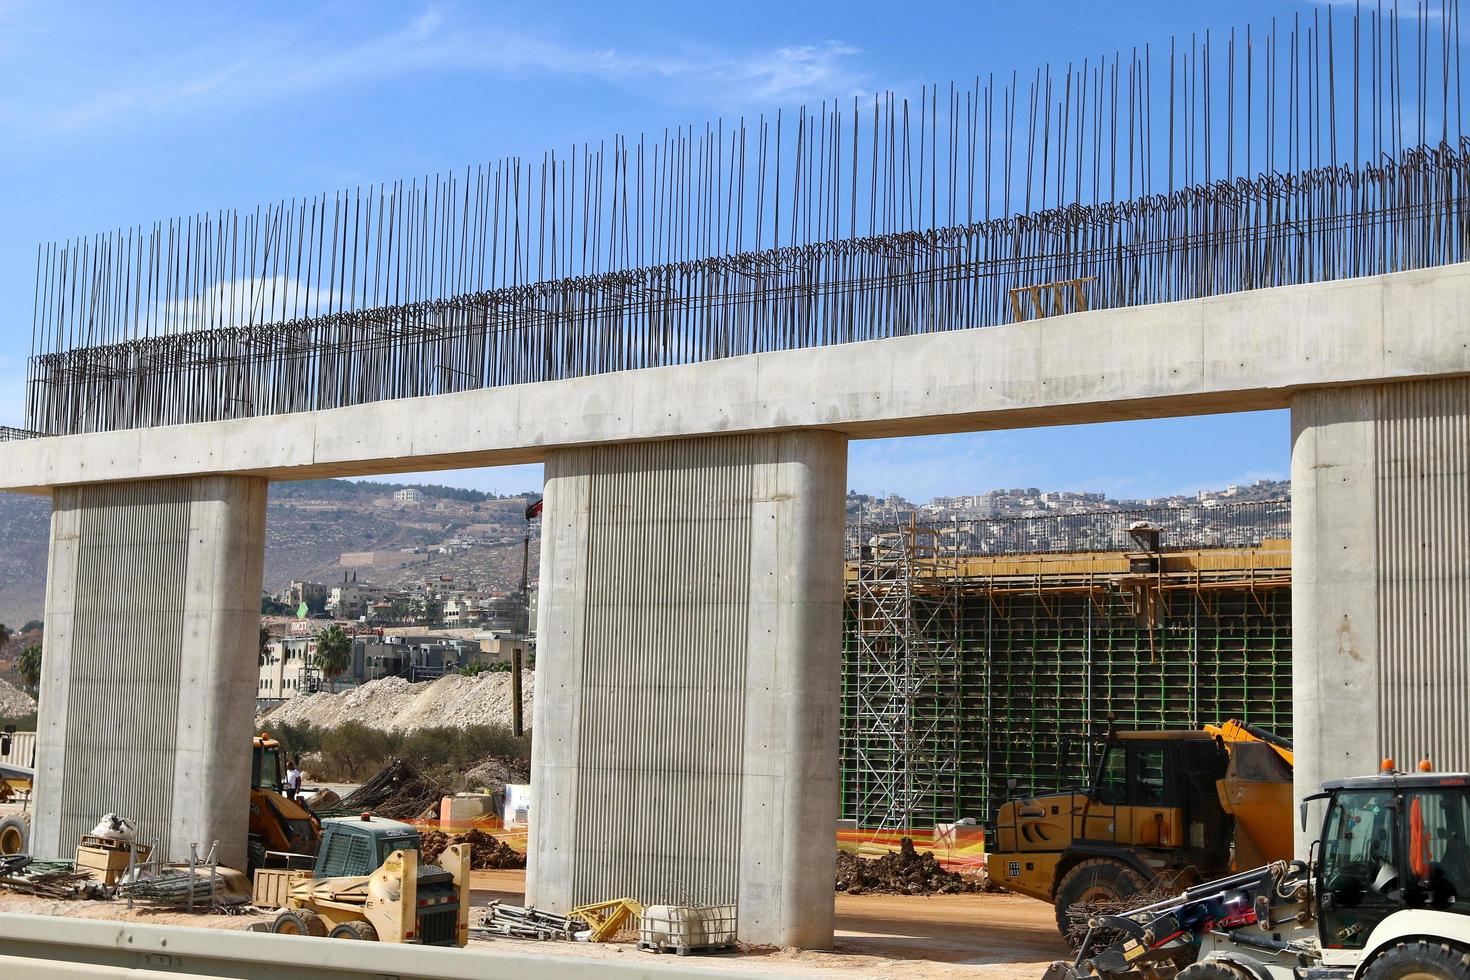 haifa israel 1 de abril de 2019. gran puente de carretera que cruza el río. foto